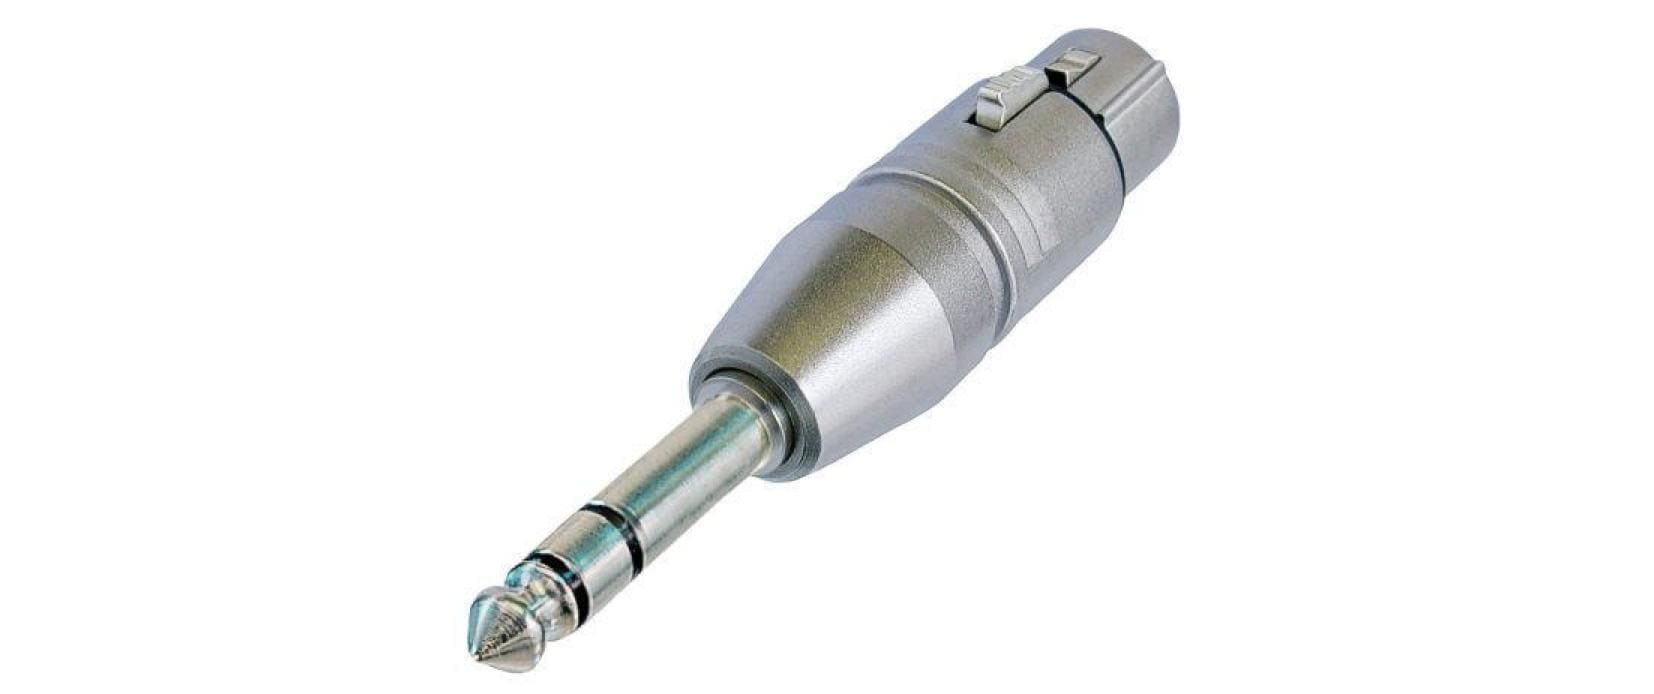 Neutrik Audio-Adapter NA3FP XLR 3 Pole, female - Klinke 6.3 mm, male